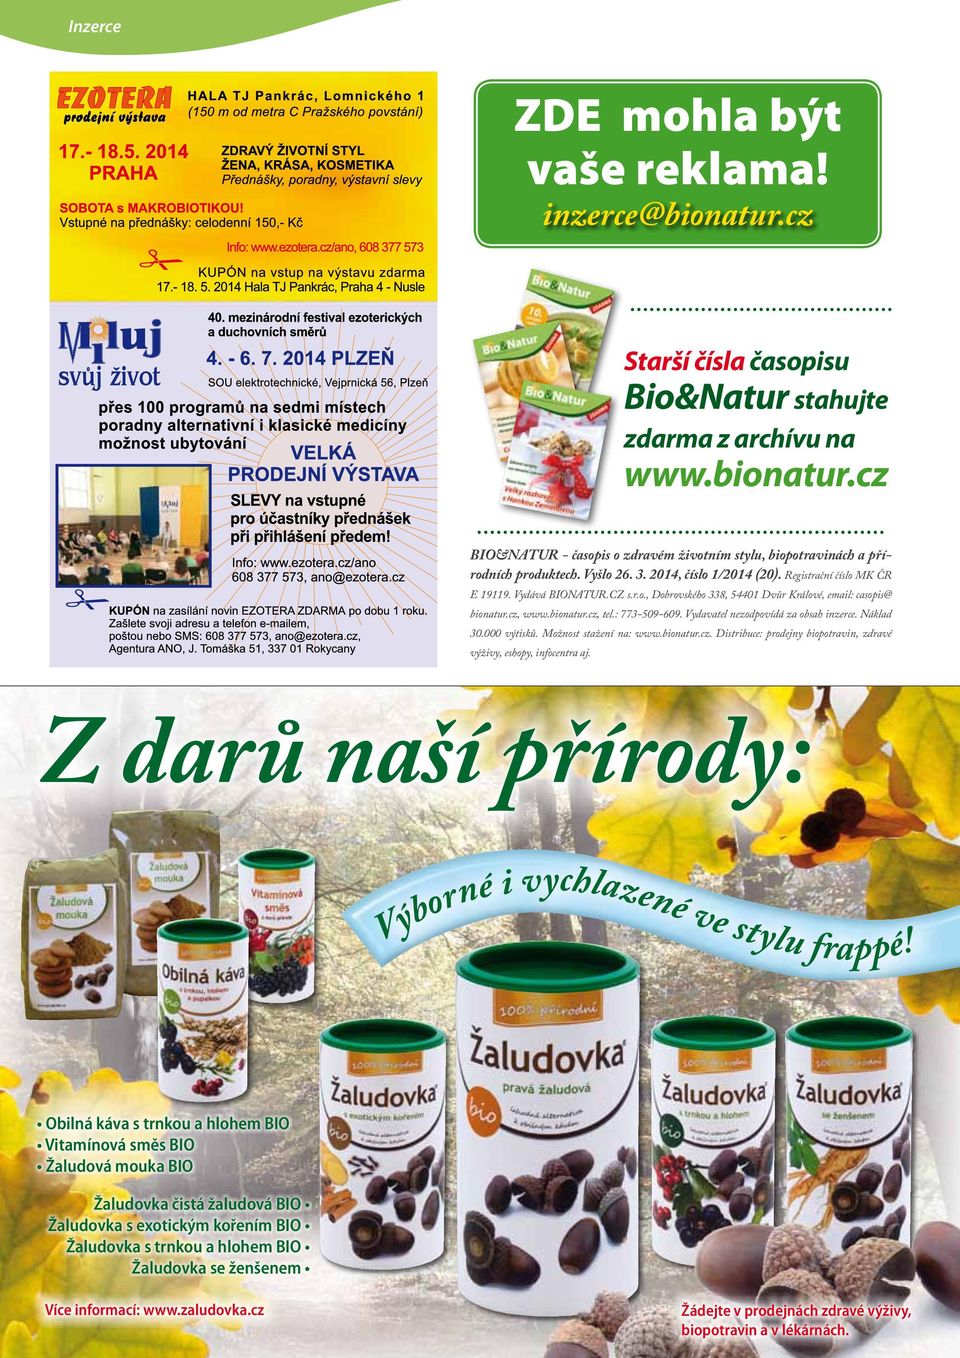 Vydavatel nezodpovídá za obsah inzerce. Náklad 30.000 výtisků. Možnost stažení na: www.bionatur.cz. Distribuce: prodejny biopotravin, zdravé výživy, eshopy, infocentra aj.